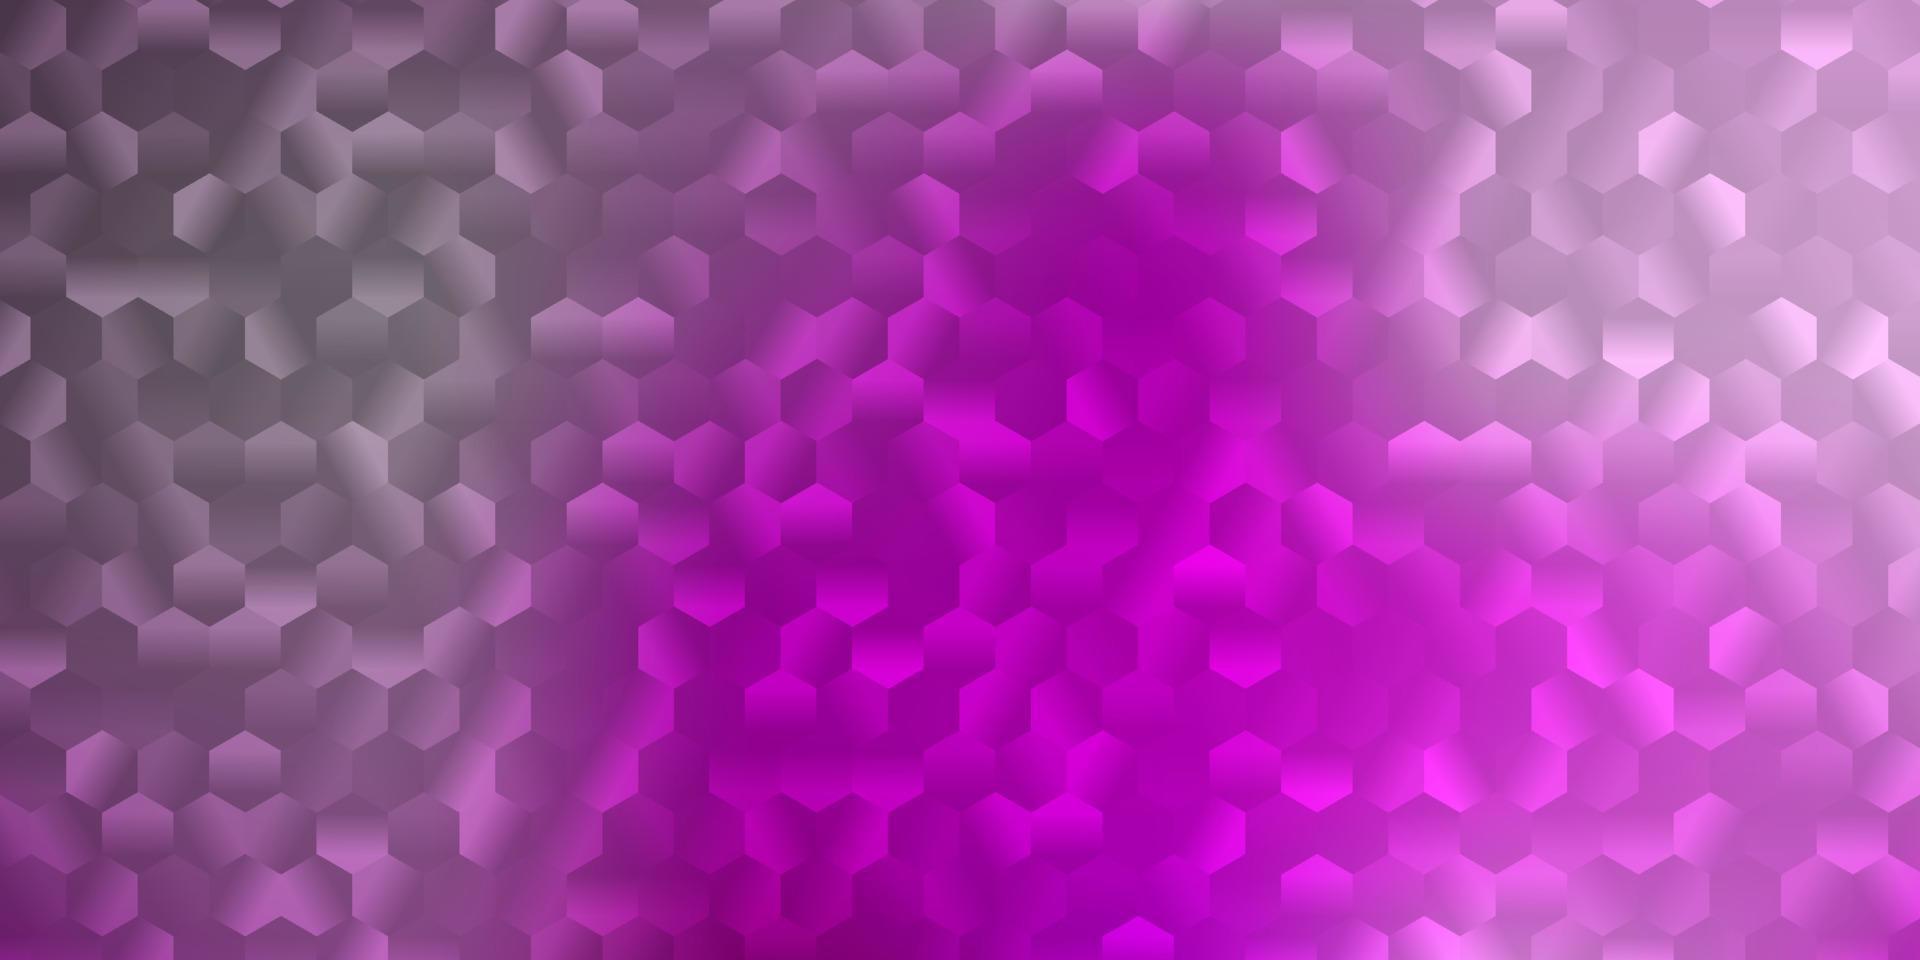 patrón de vector de color púrpura claro, rosa con hexágonos.